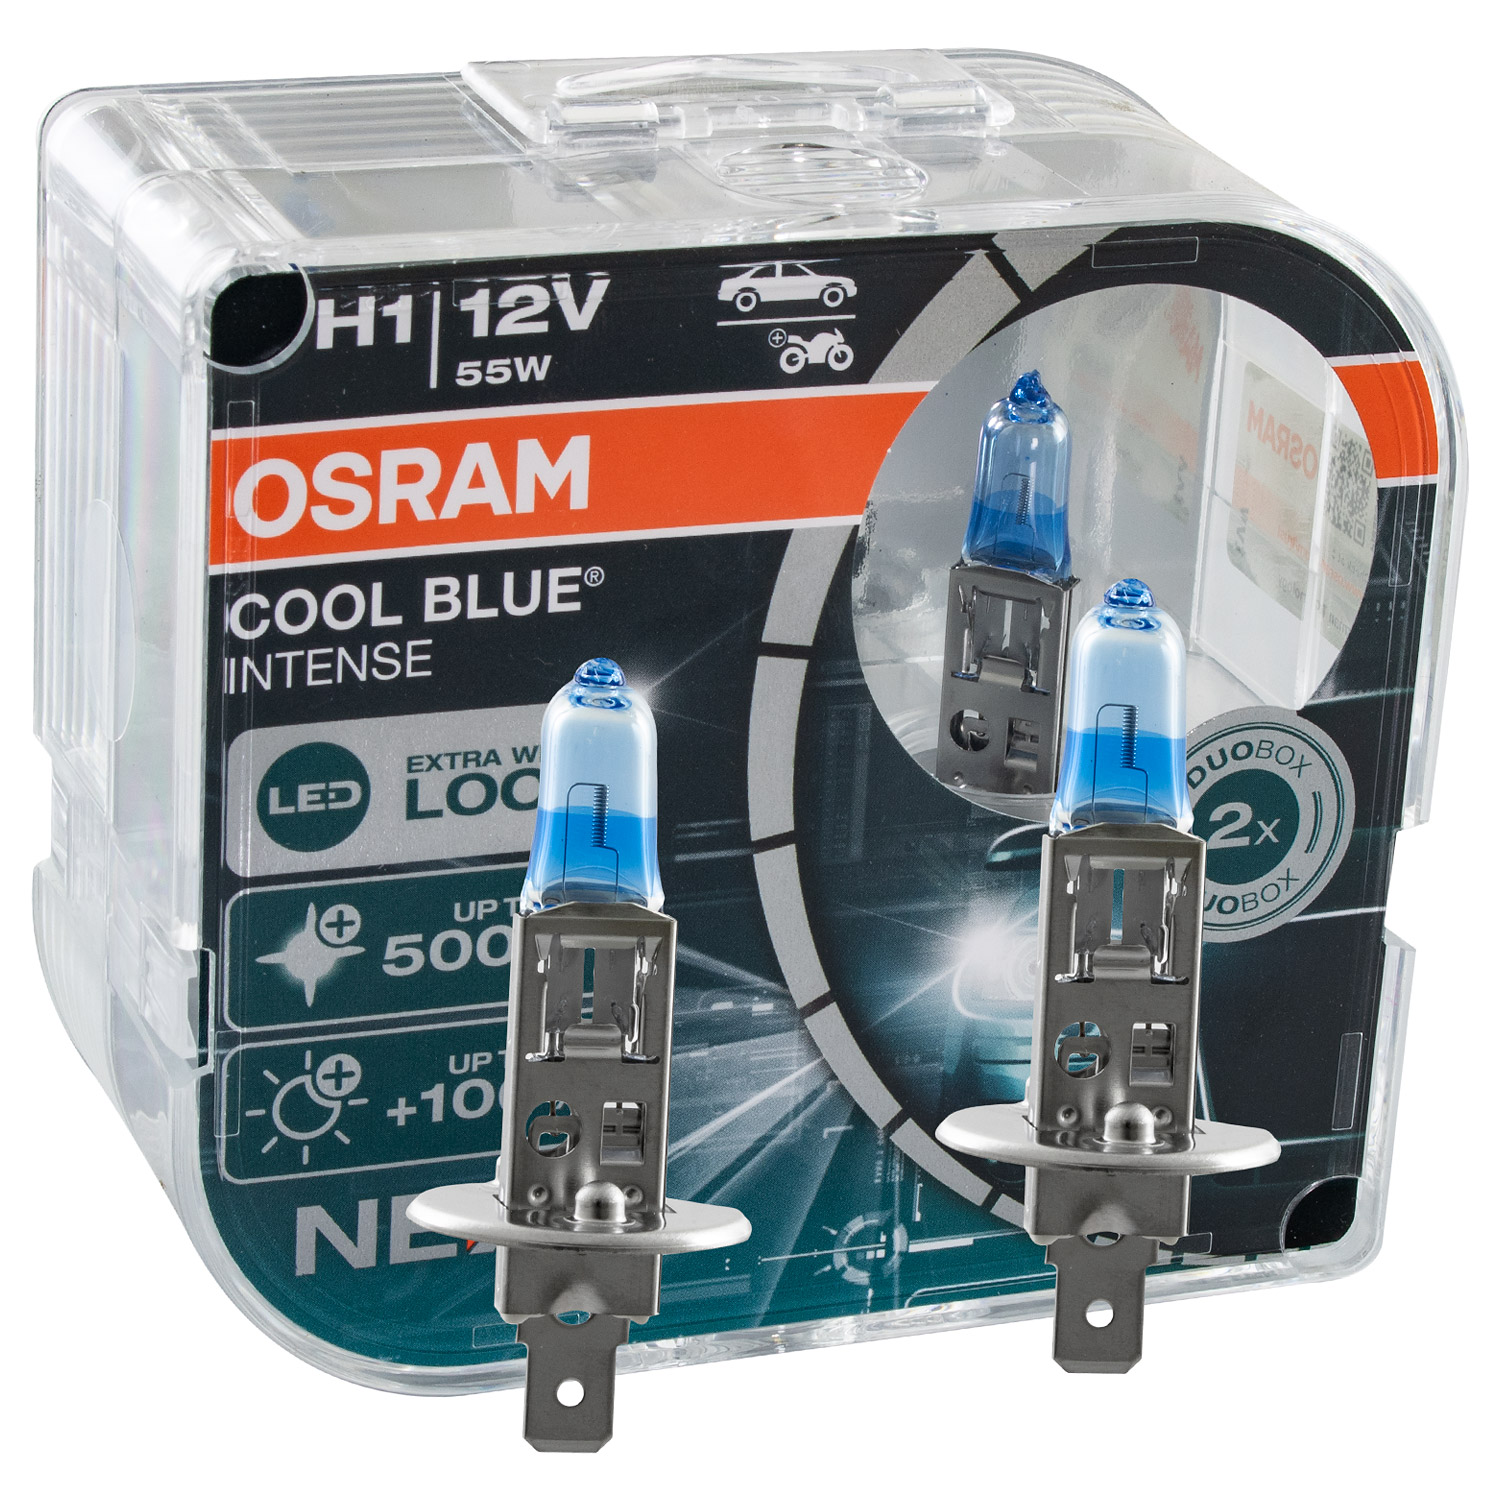 OSRAM COOL BLUE® INTENSE (Next Gen) H1 64150CBN-HCB DUOBOX